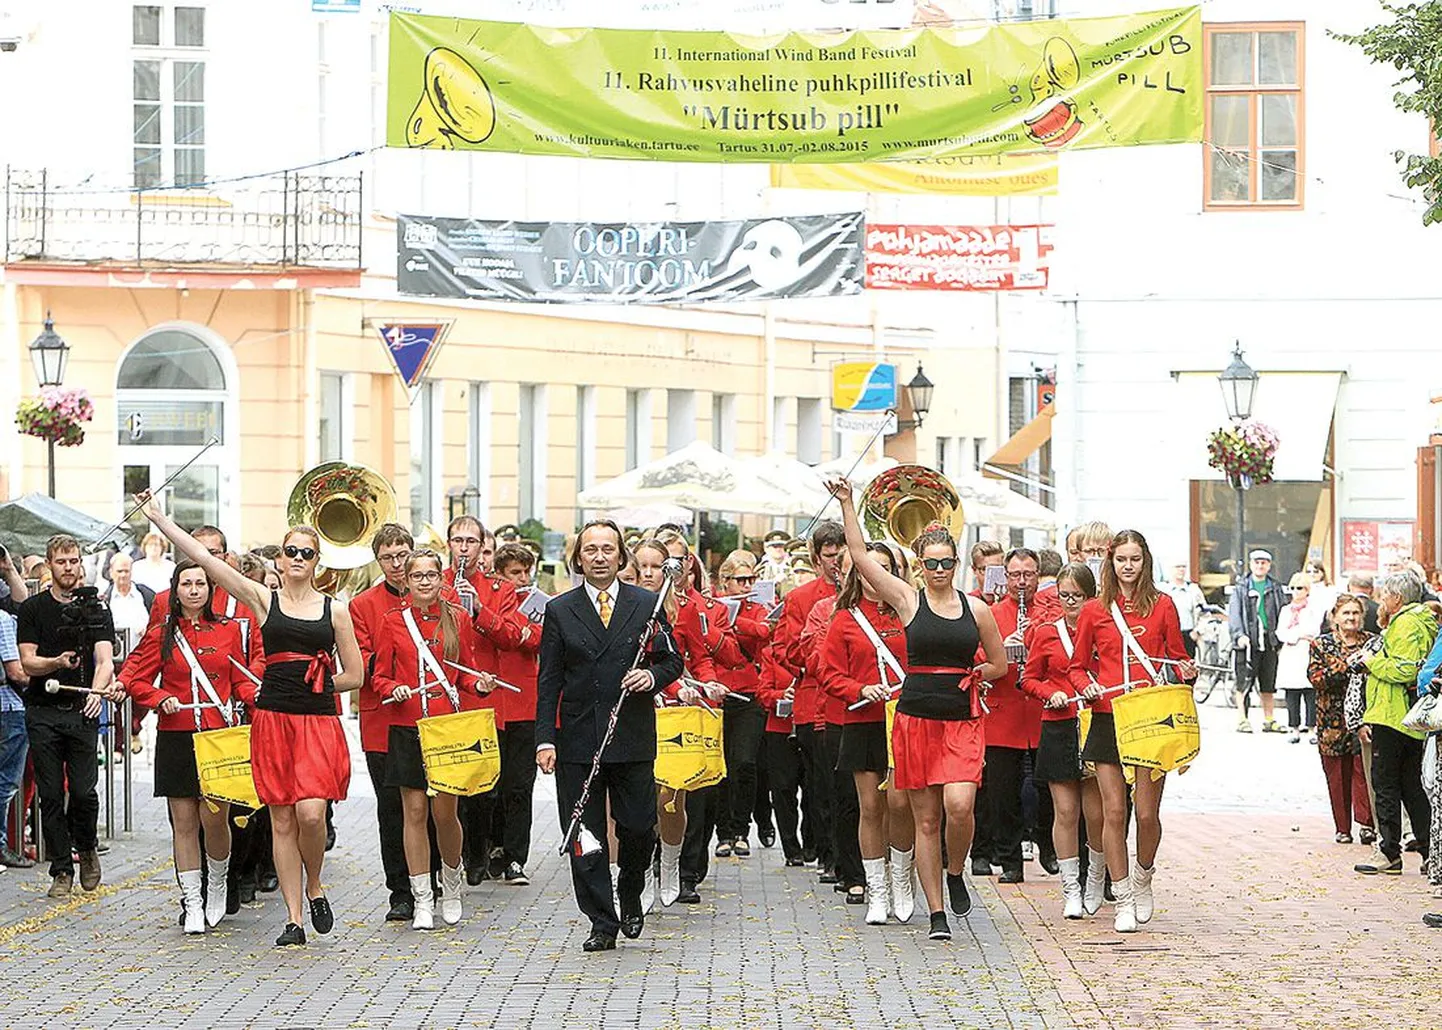 Mullu mürtsusid pillid Tartu kesklinnas uhkelt ja Margus Kasemaa võis oma orkestri eesotsas rongkäigus sammuda. Tartu tänavusi suurüritusi tutvustava brošüüri ühe lehekülje alaservale on trükitud, et «Mürtsub pill» täidab Tartu taas puhkpillimuusikaga. Ülaservas on aga kirjas, et seesama festival jääb ära.